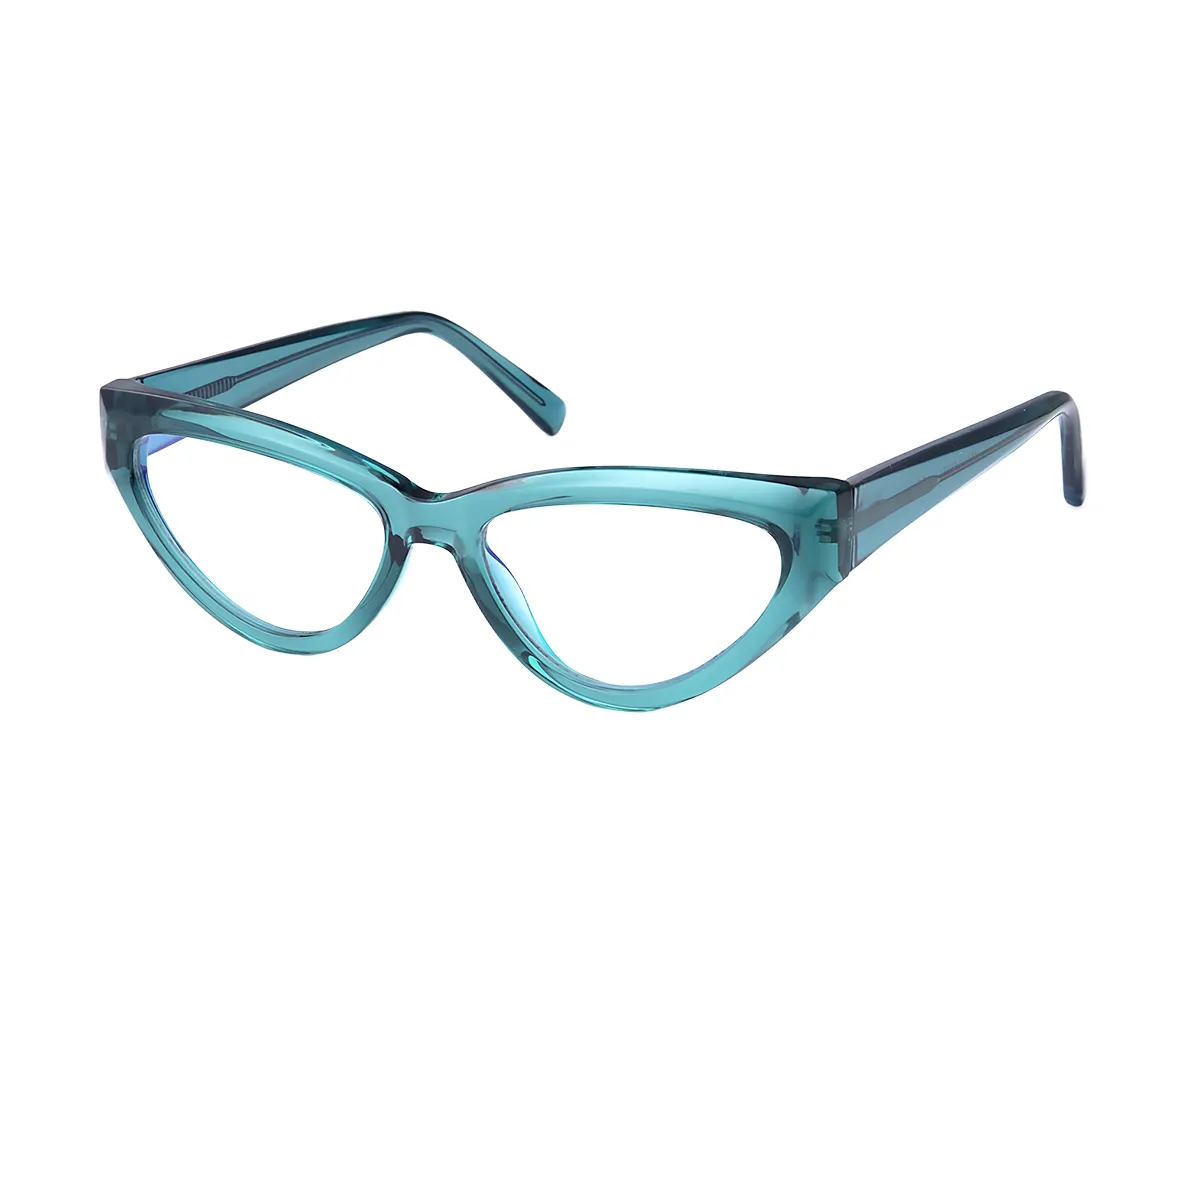 Paula - Cat-eye Green Glasses for Women